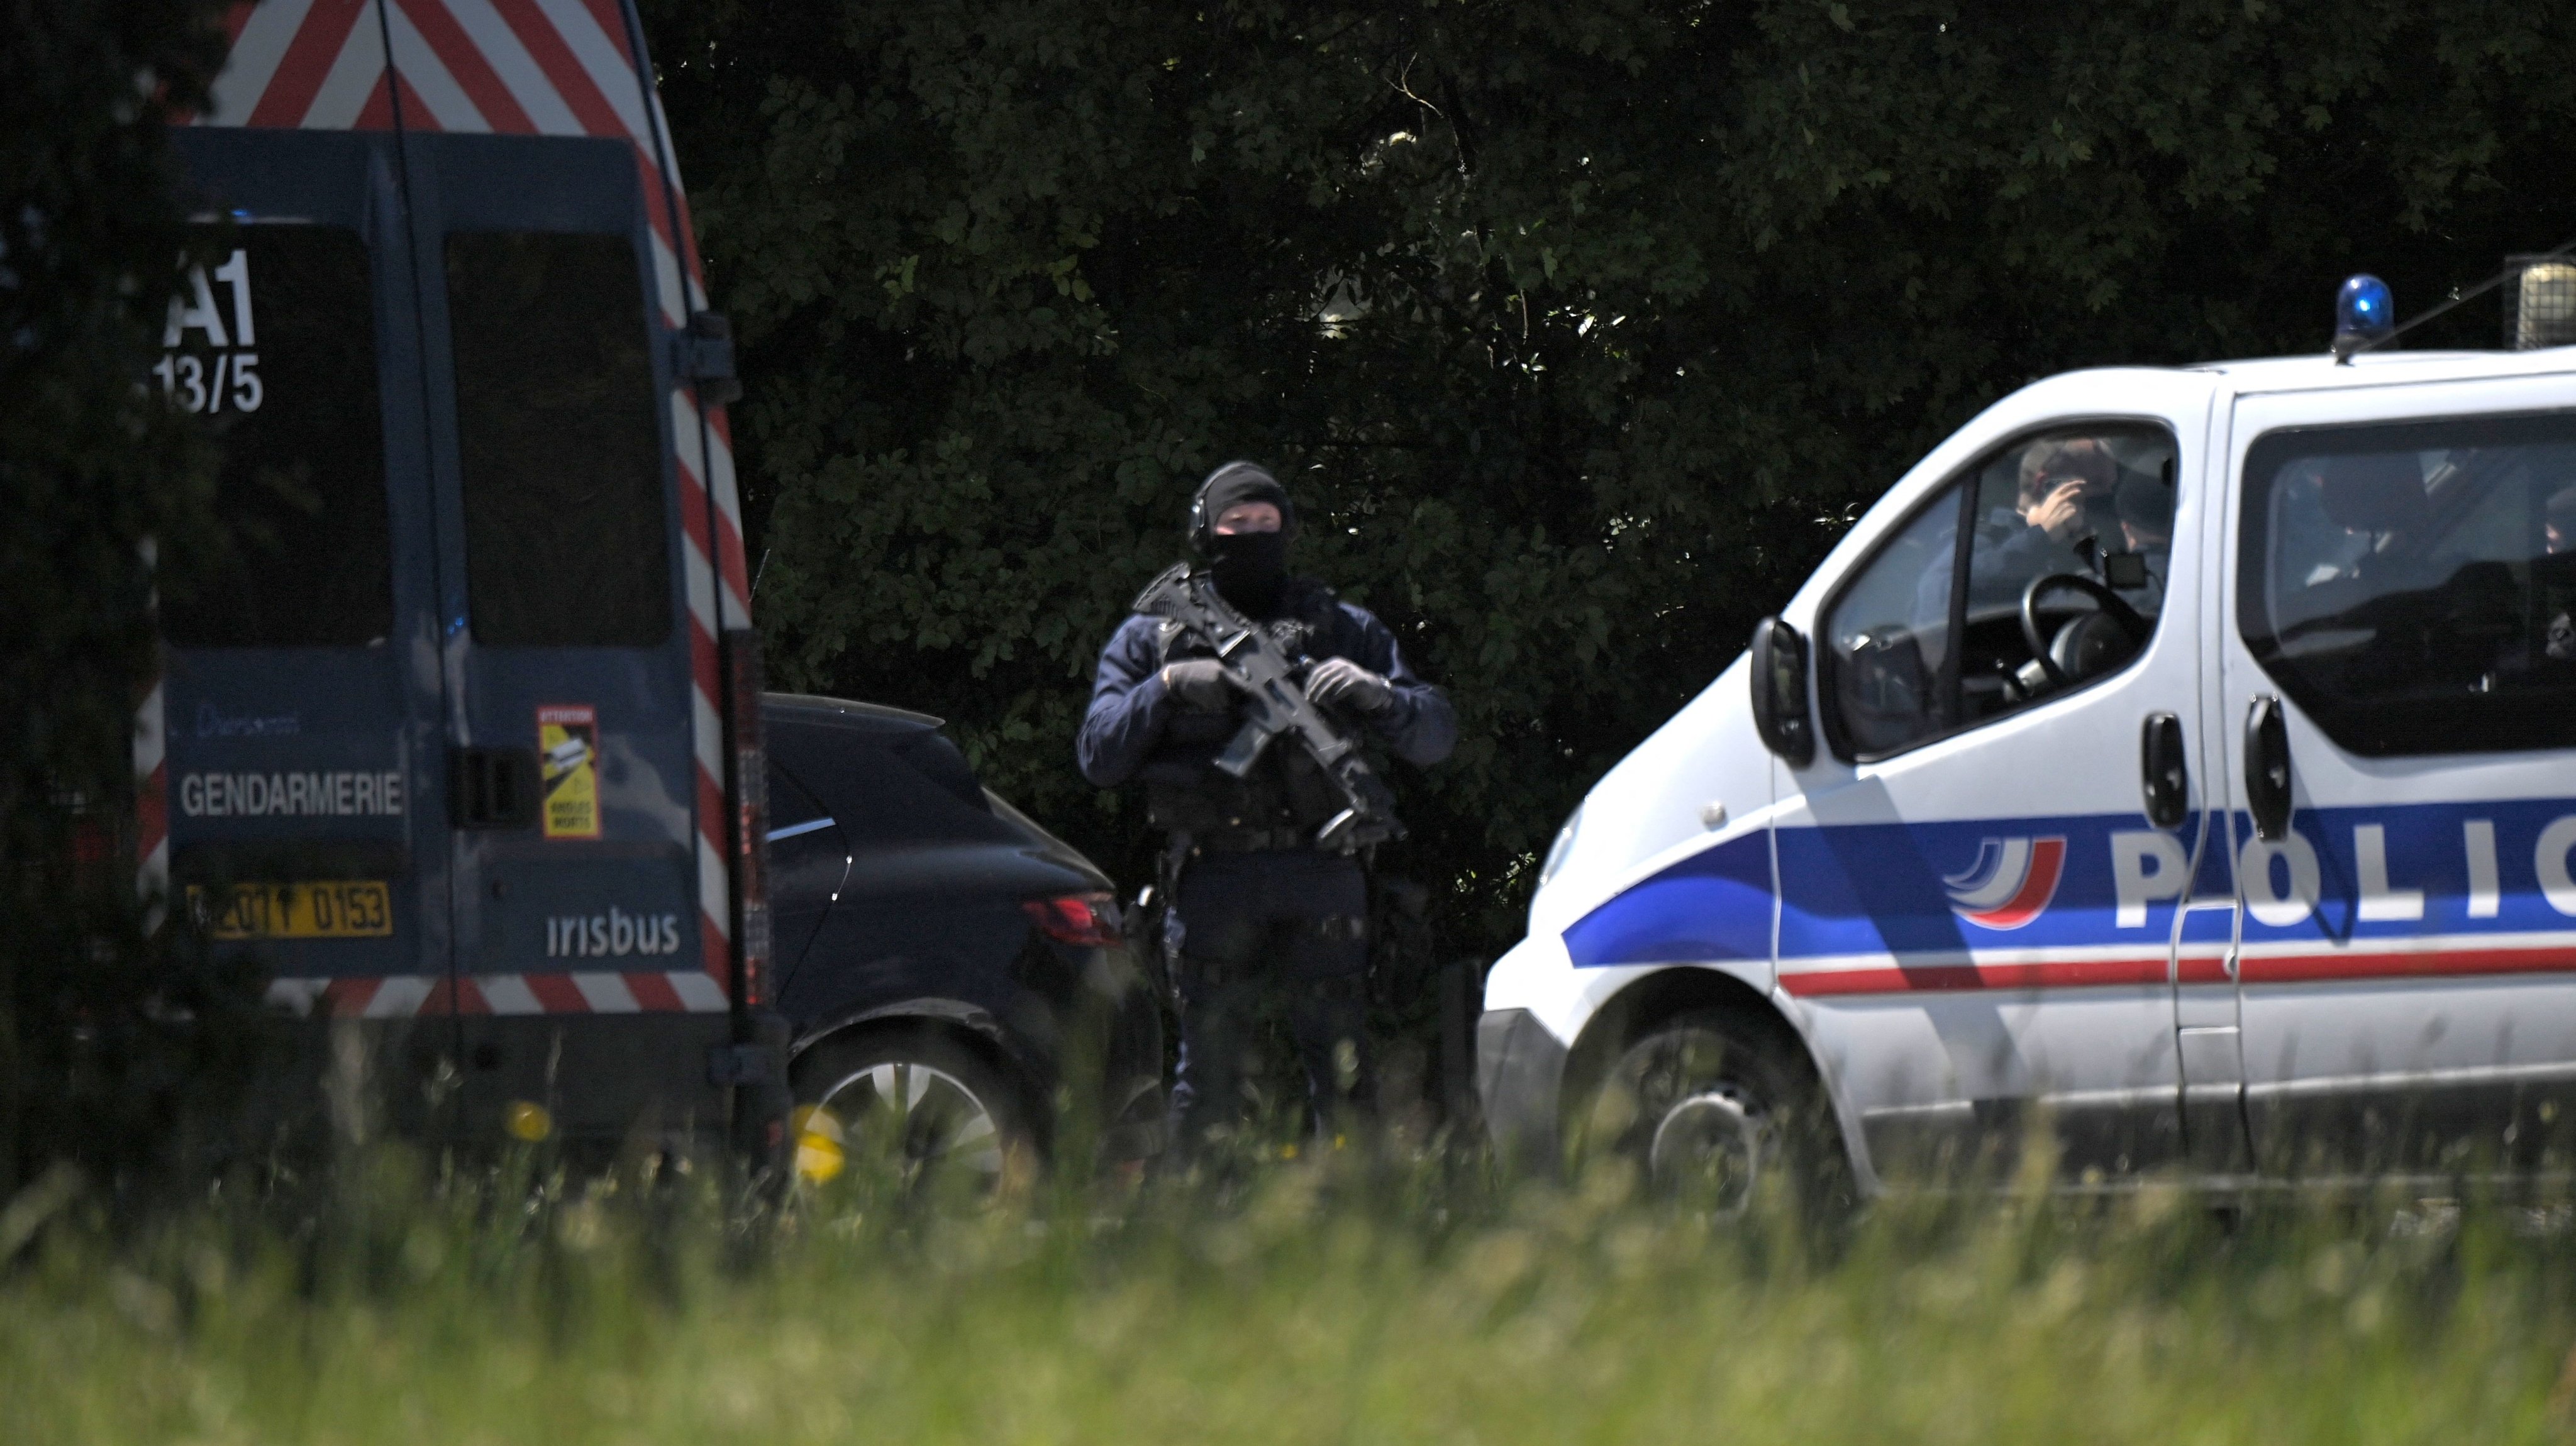 FRANCE-POLICE-ASSAULT-INVESTIGATION